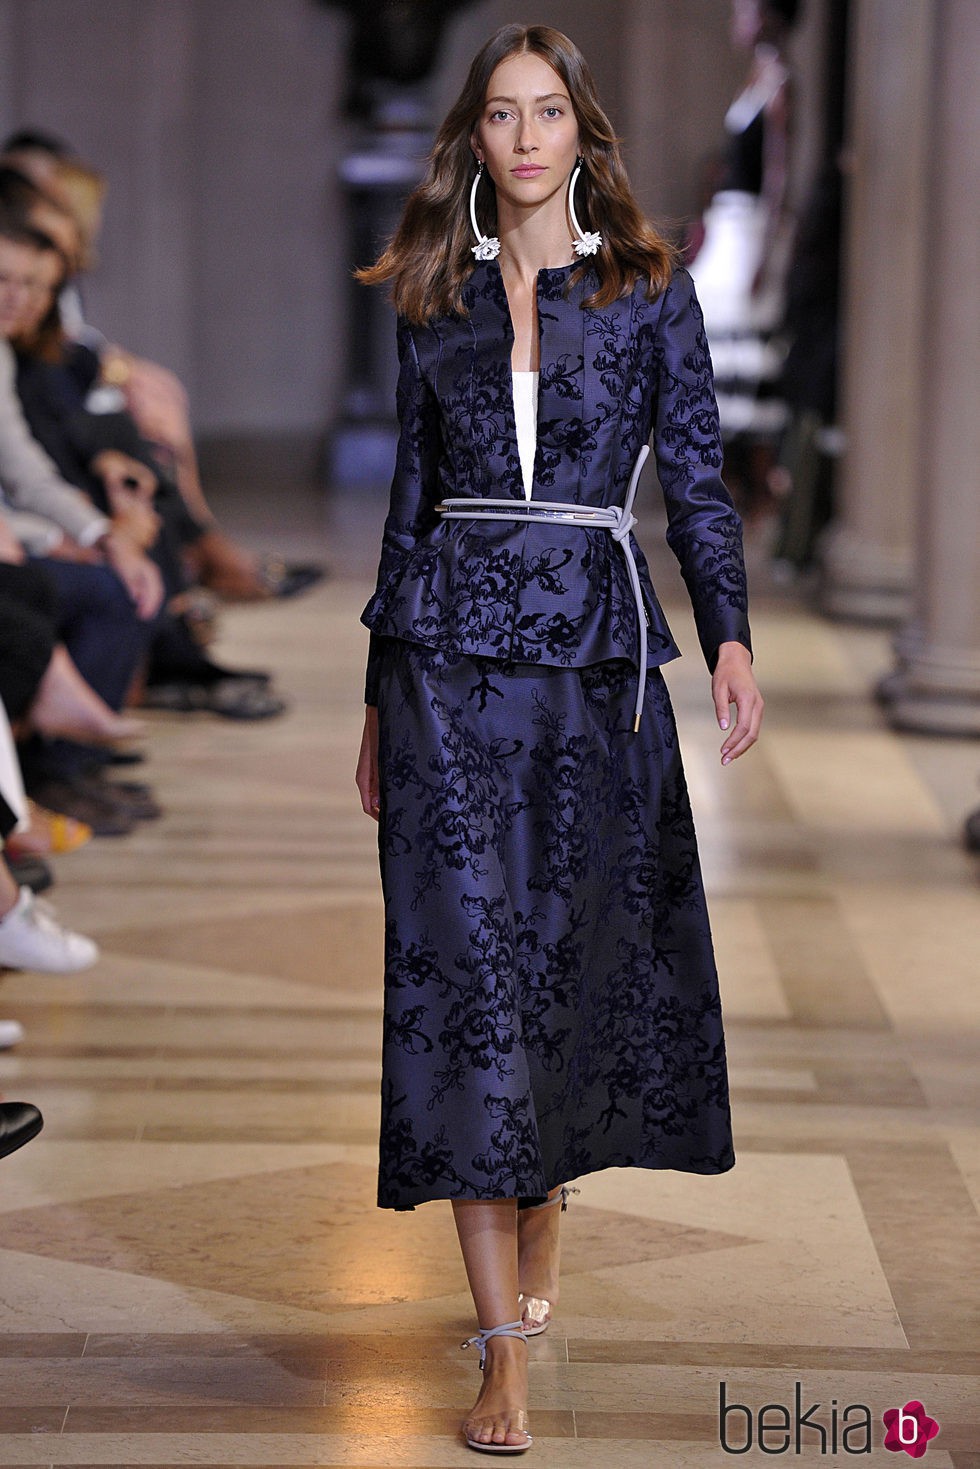 Traje de chaqueta y falda azul marino de la colección de Carolina Herrera primavera/verano 2016 en la Nueva York Fashion Week